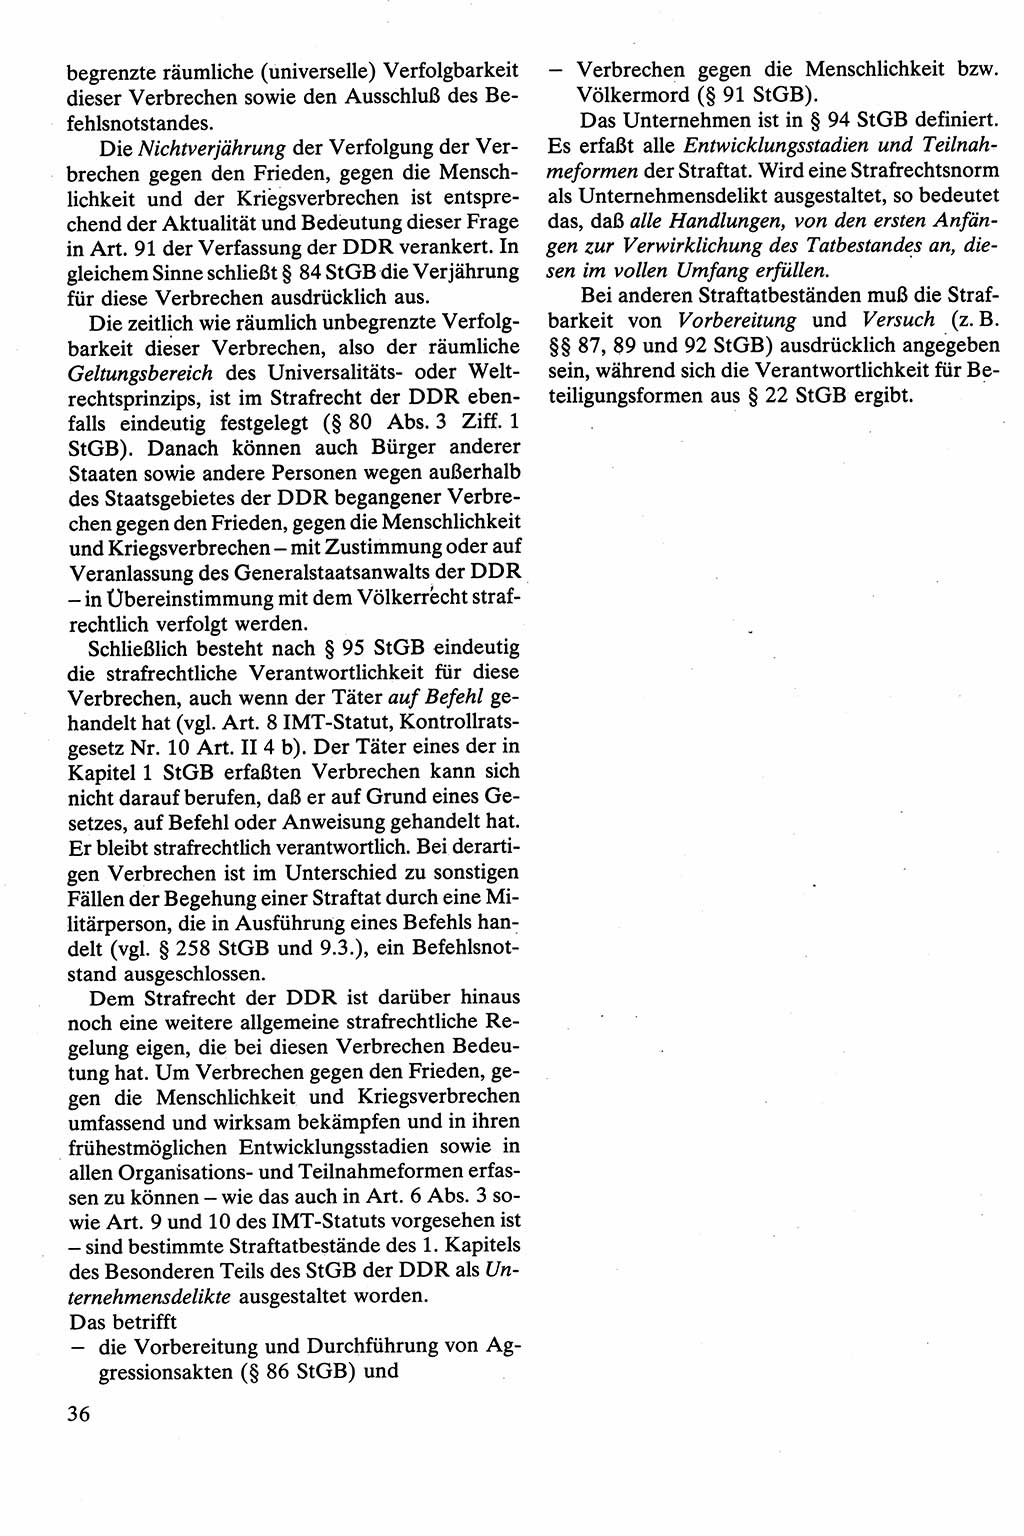 Strafrecht [Deutsche Demokratische Republik (DDR)], Besonderer Teil, Lehrbuch 1981, Seite 36 (Strafr. DDR BT Lb. 1981, S. 36)